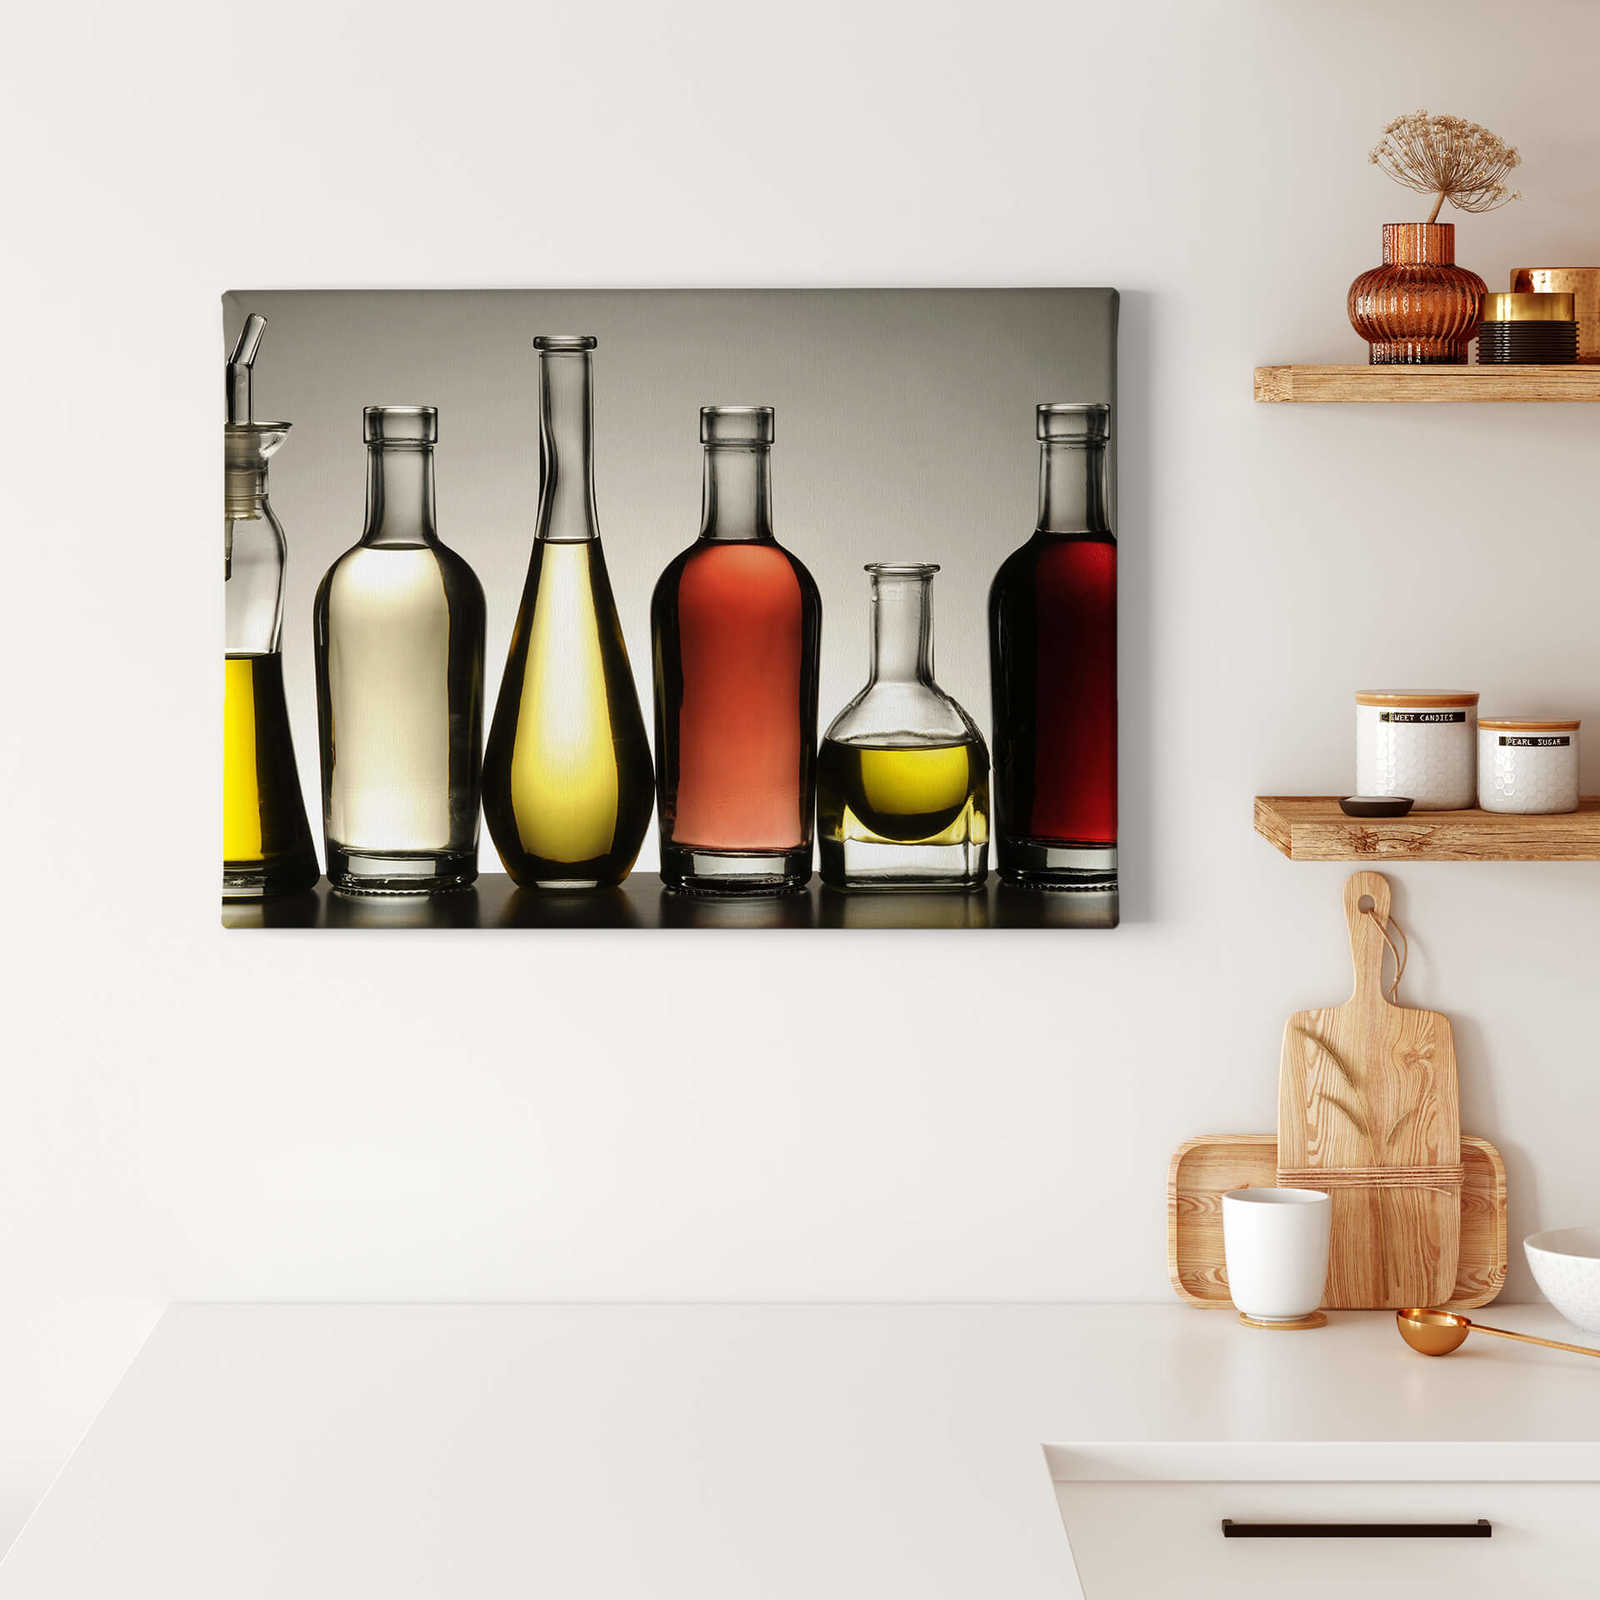             Keuken canvas schilderij Flessen met olie - 0,70 m x 0,50 m
        